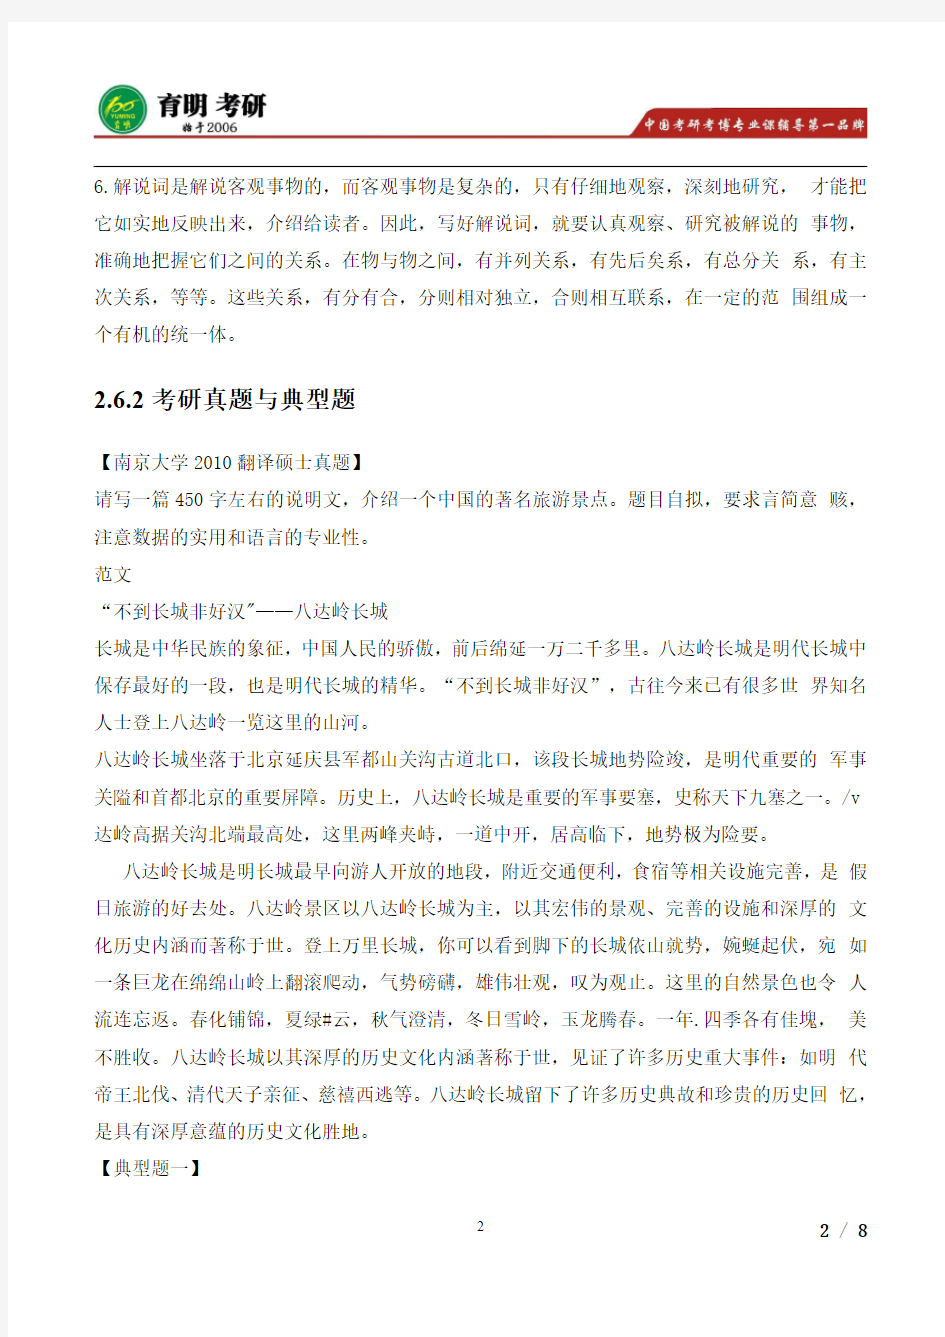 2015年翻译硕士汉语写作与百科知识考研真题,解说词类考研范文,辅导培训